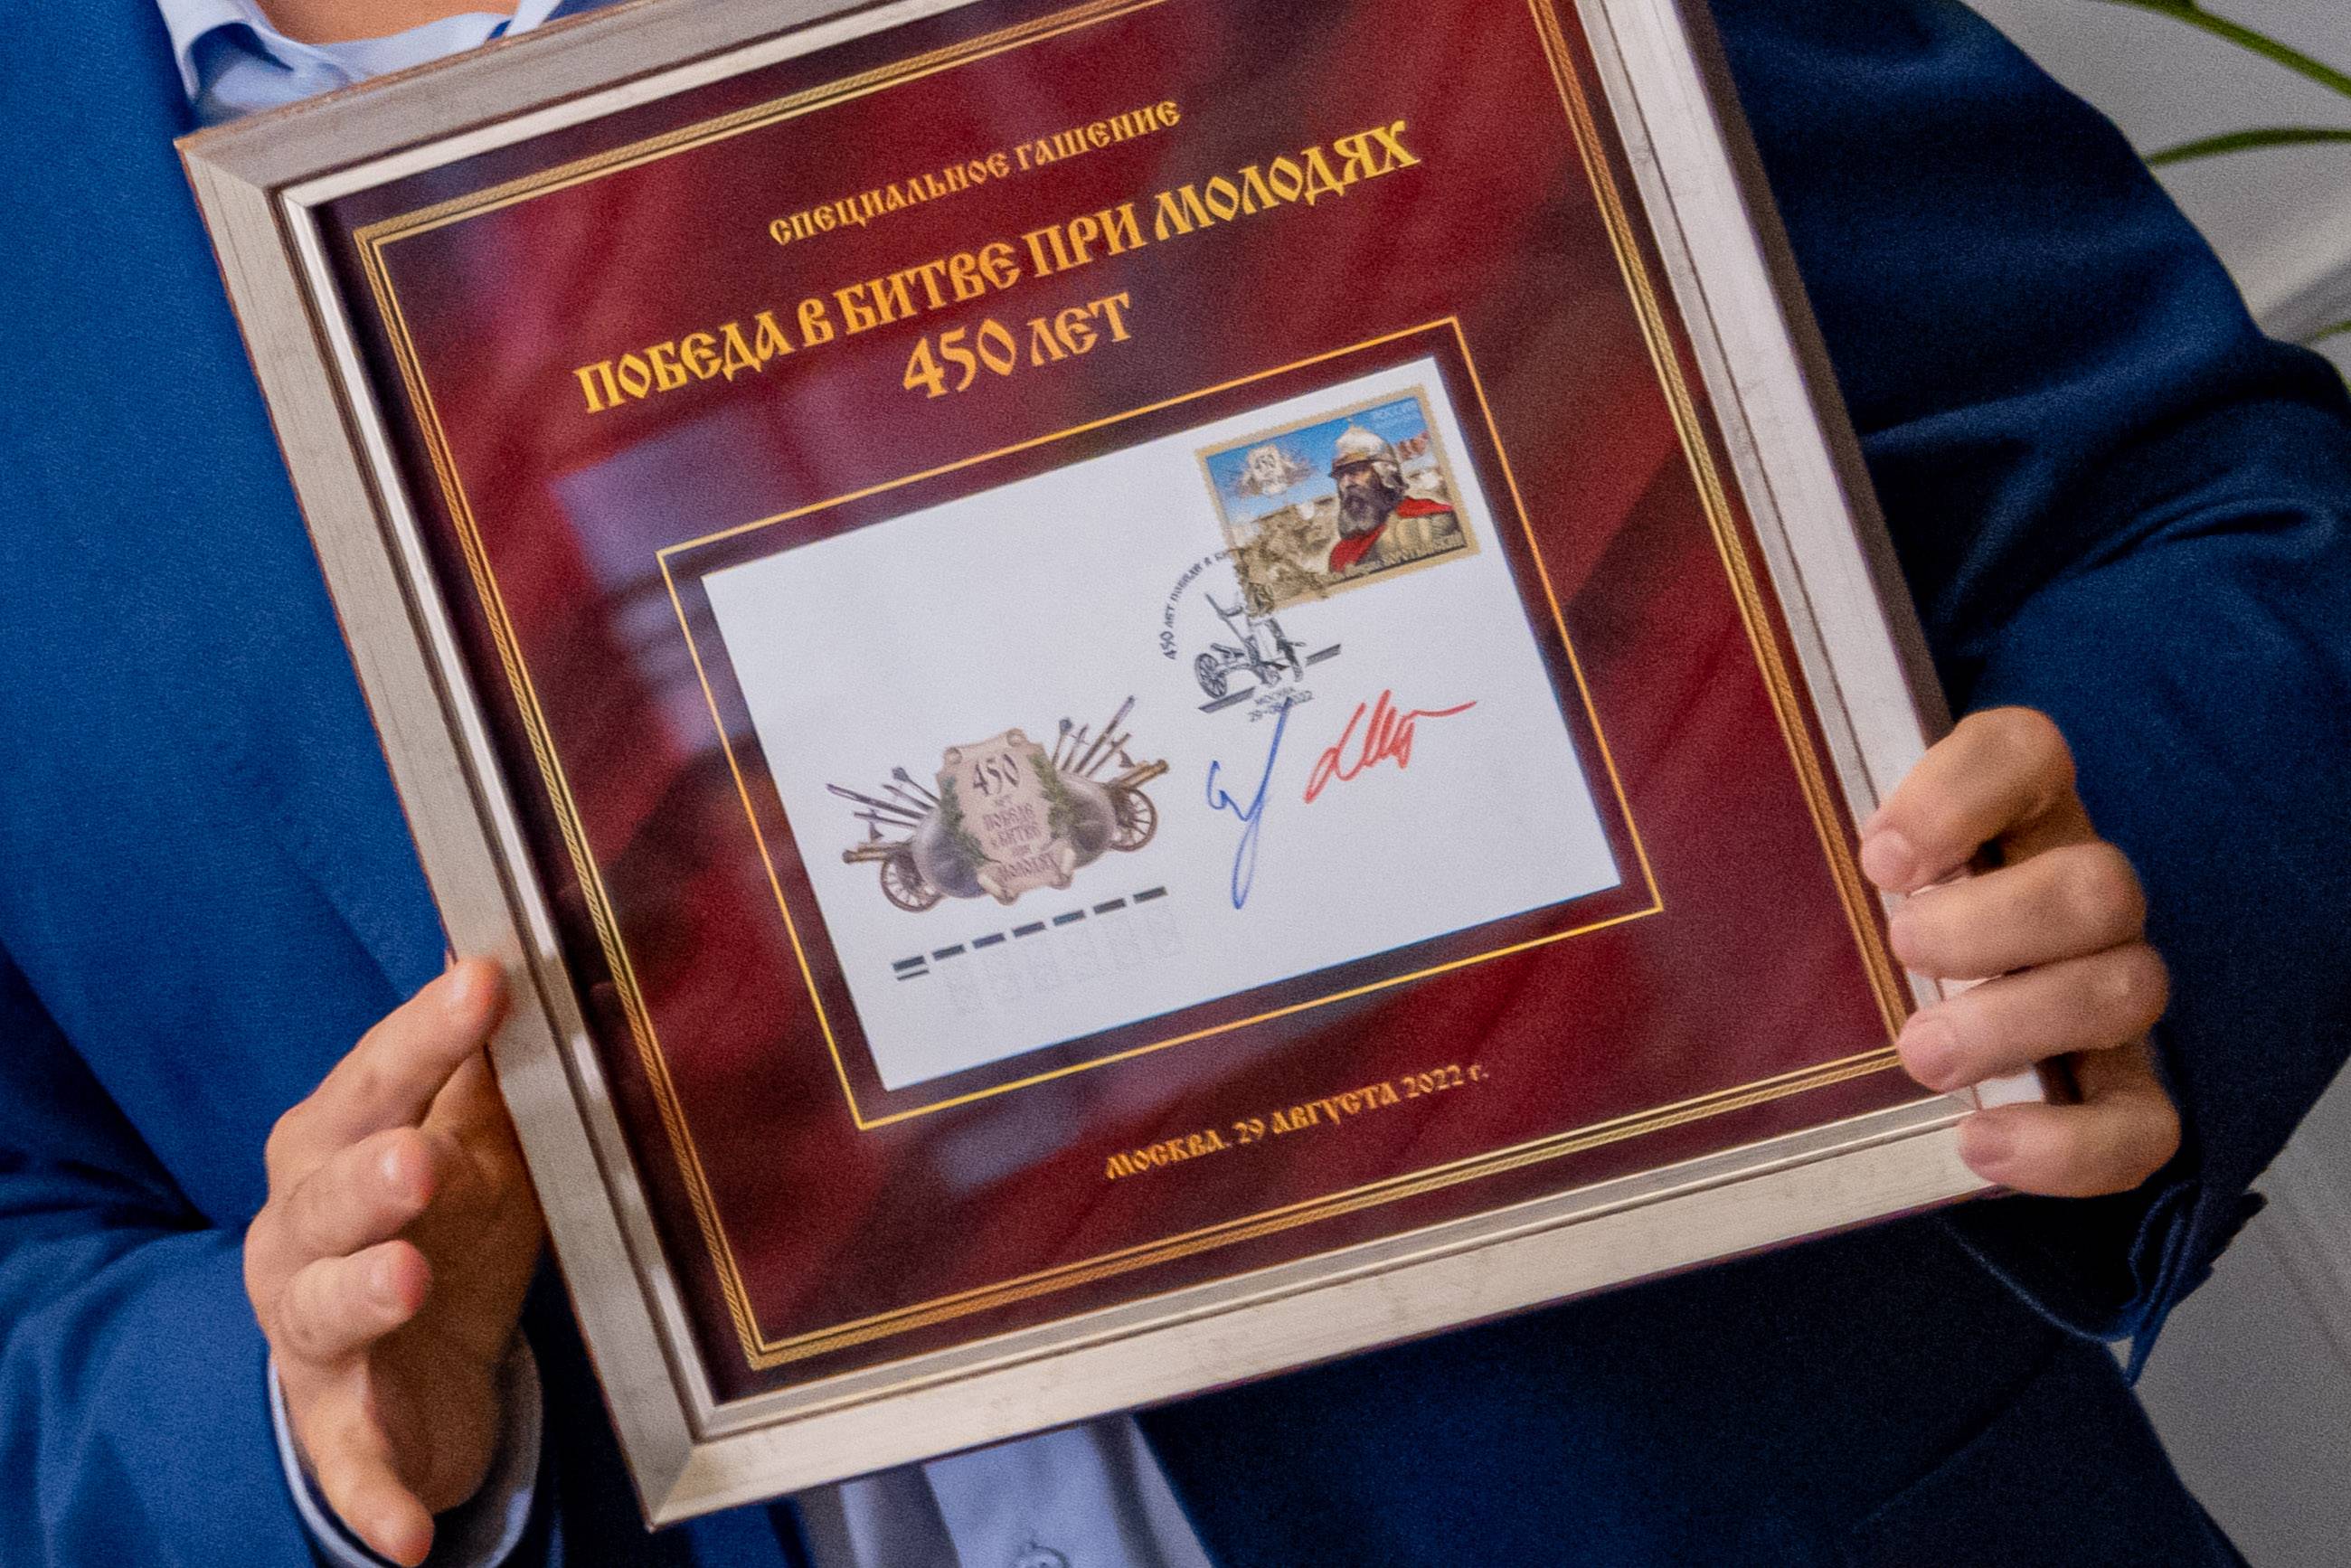 В России выпущена почтовая марка в честь 450-летия битвы при Молодях